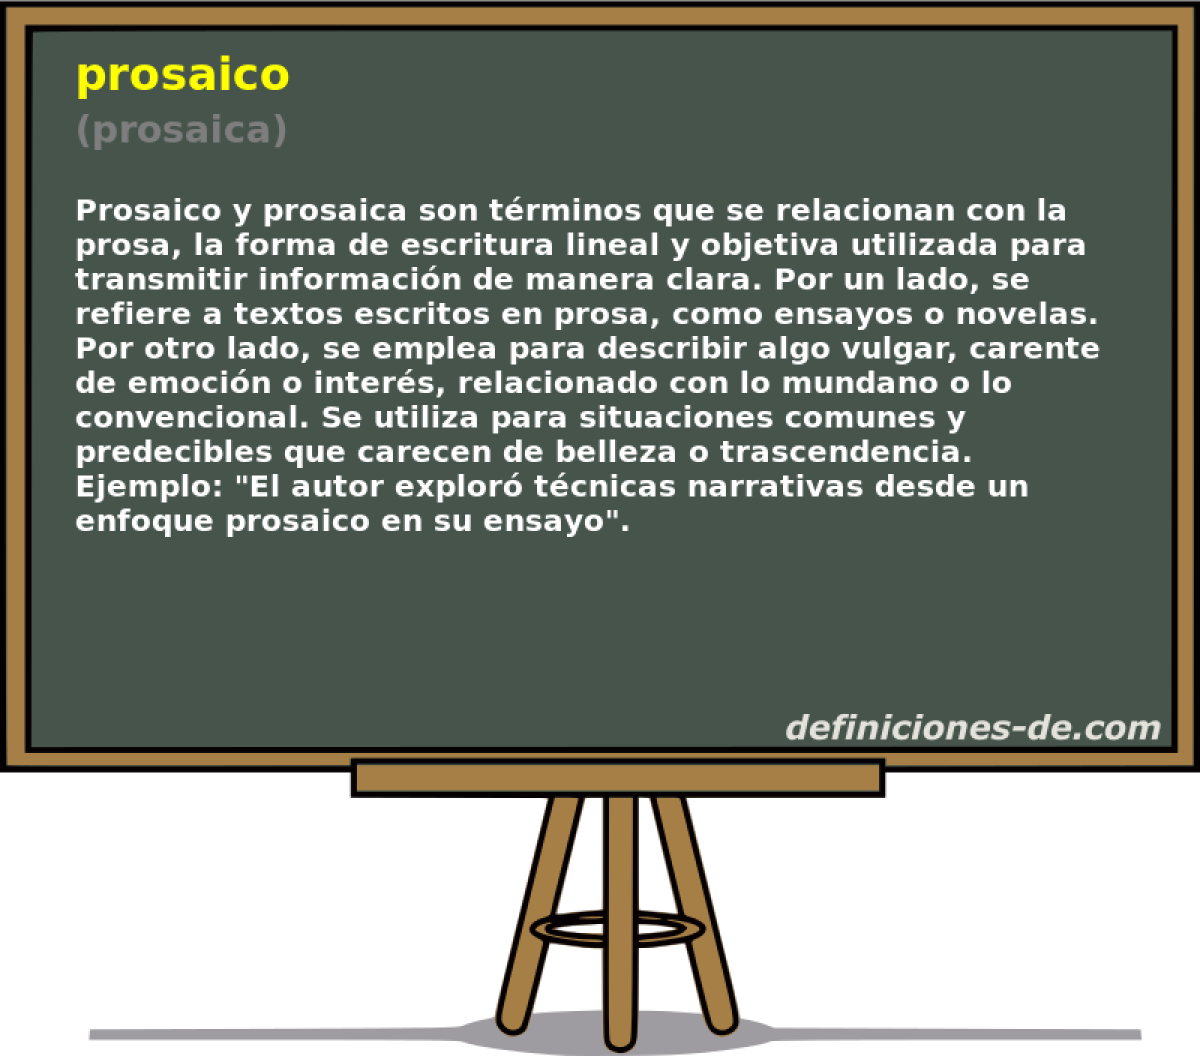 prosaico (prosaica)